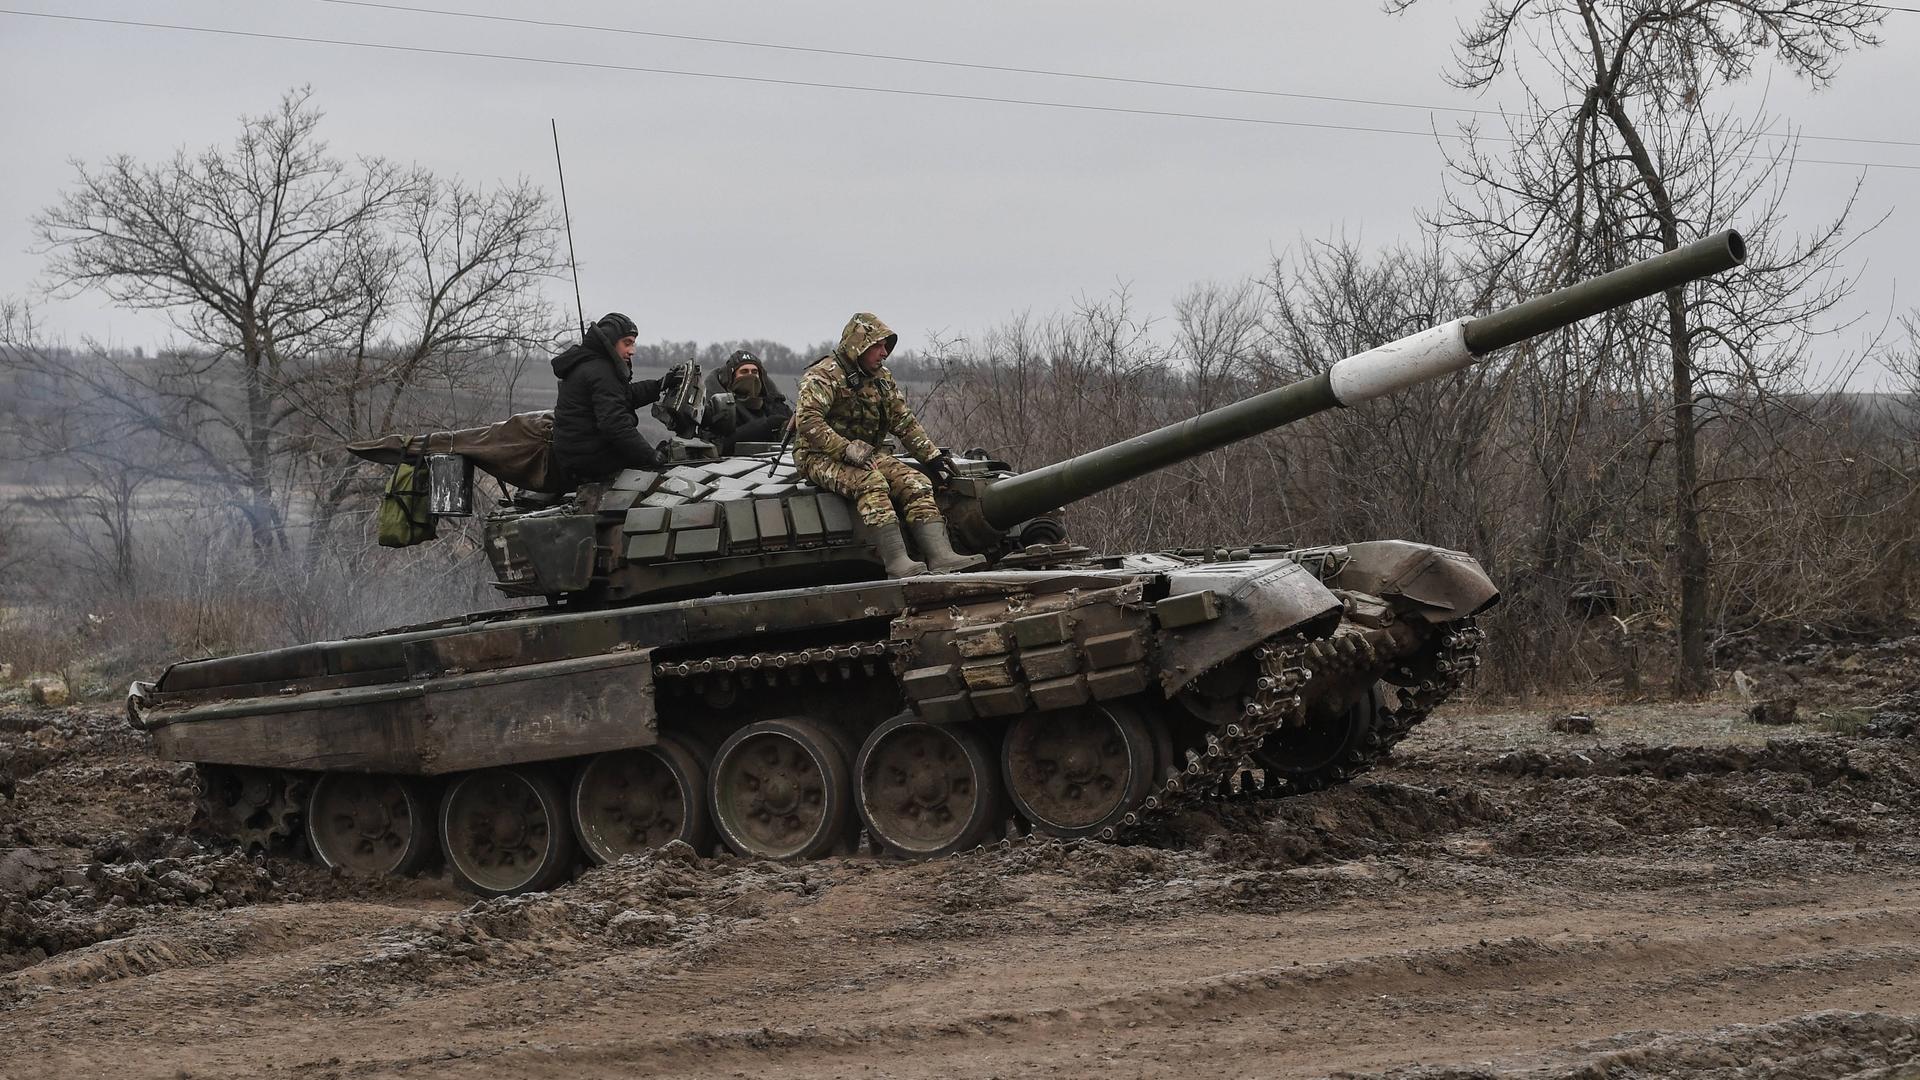 Ein Panzer auf dem russische Soldaten sitzen.